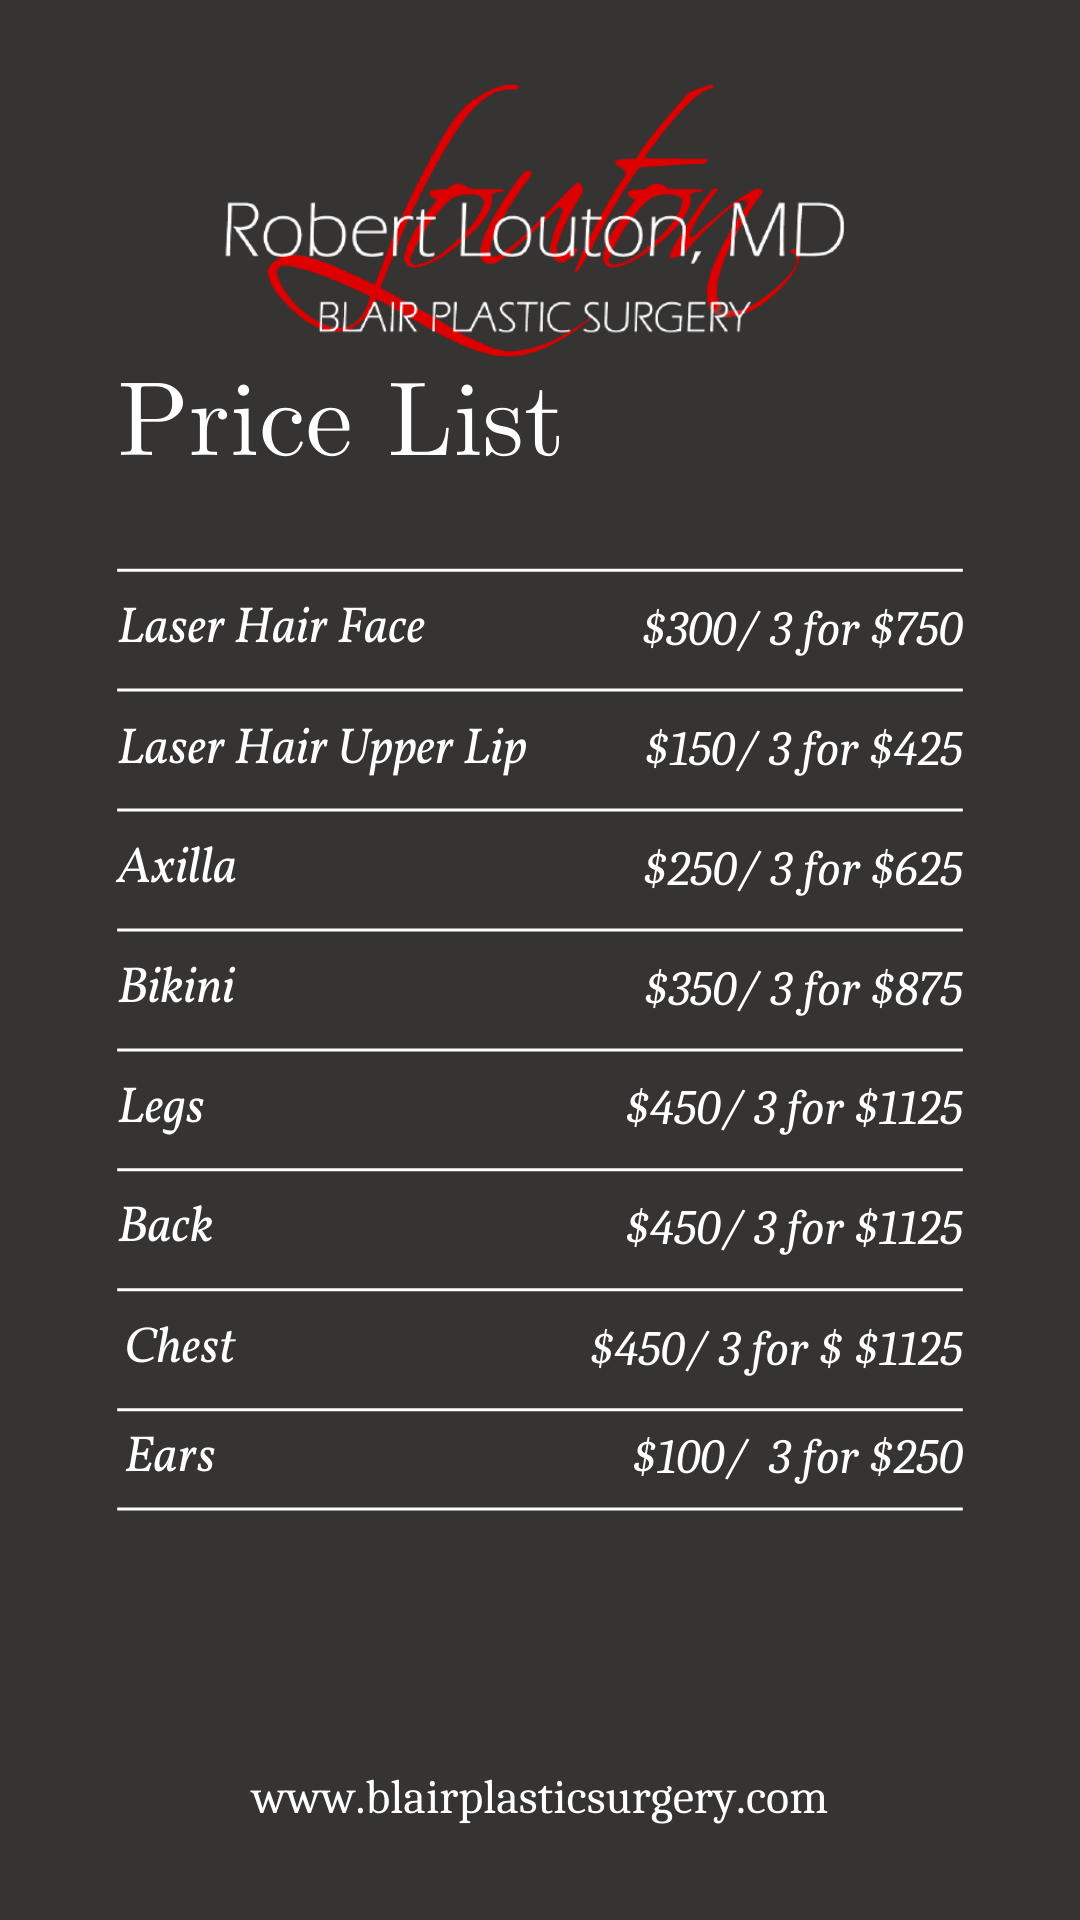 Laser Hair Price List